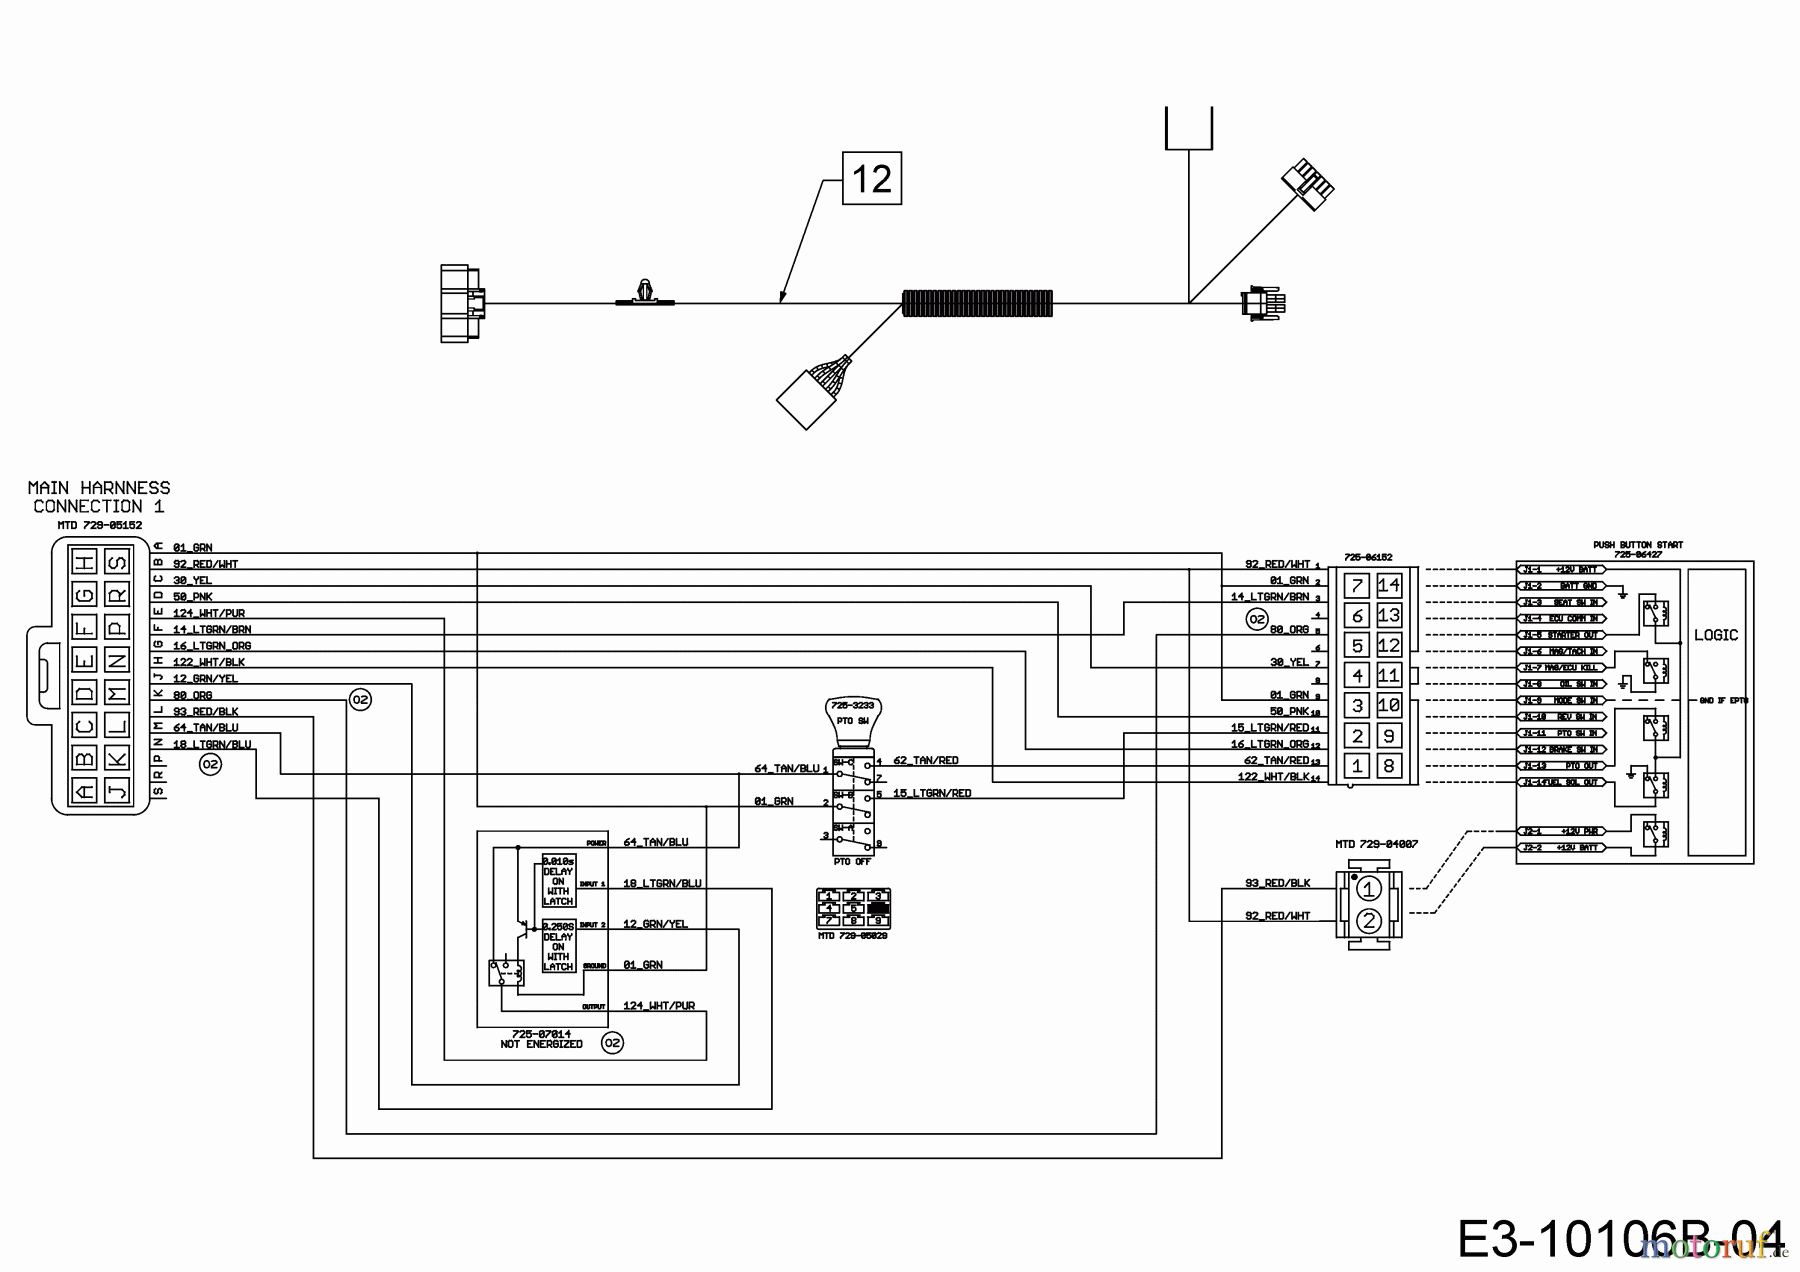  Wolf-Garten Lawn tractors 106.185 H 13BLA1VR650  (2019) Wiring diagram dashboard